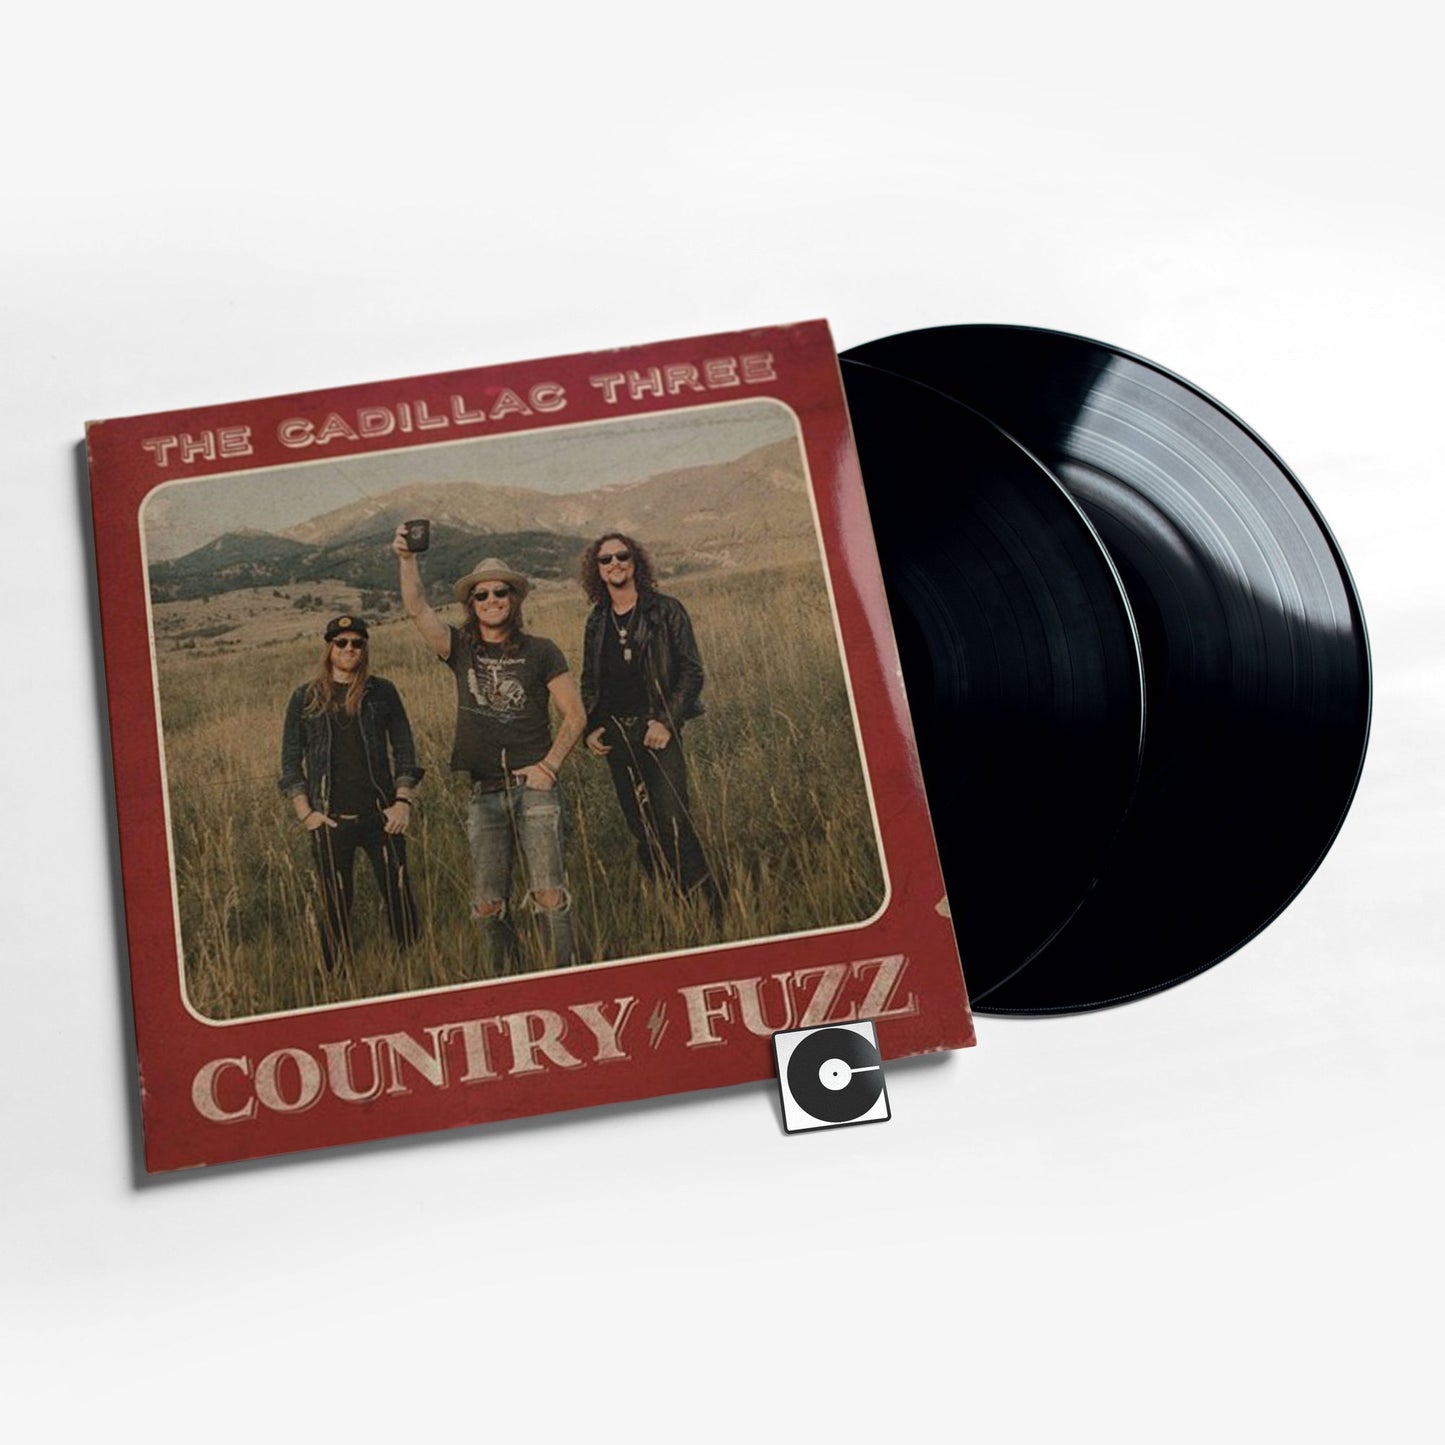 The Cadillac Three - "Country Fuzz"